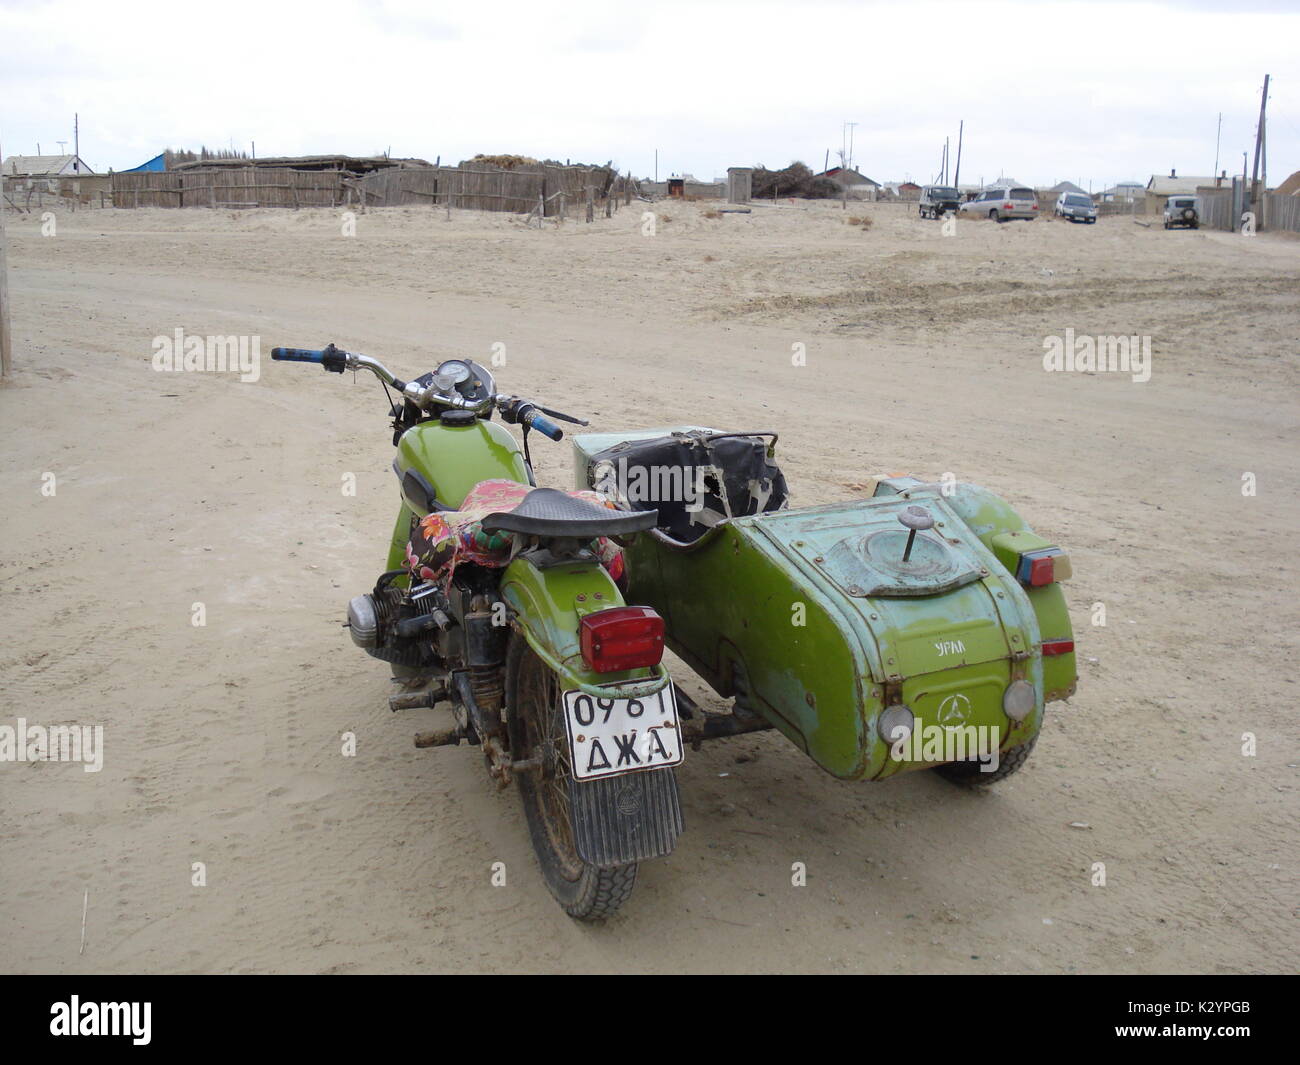 Ural sidecar motorbike in a village of Kazakhstan, near Aral Sea Stock Photo